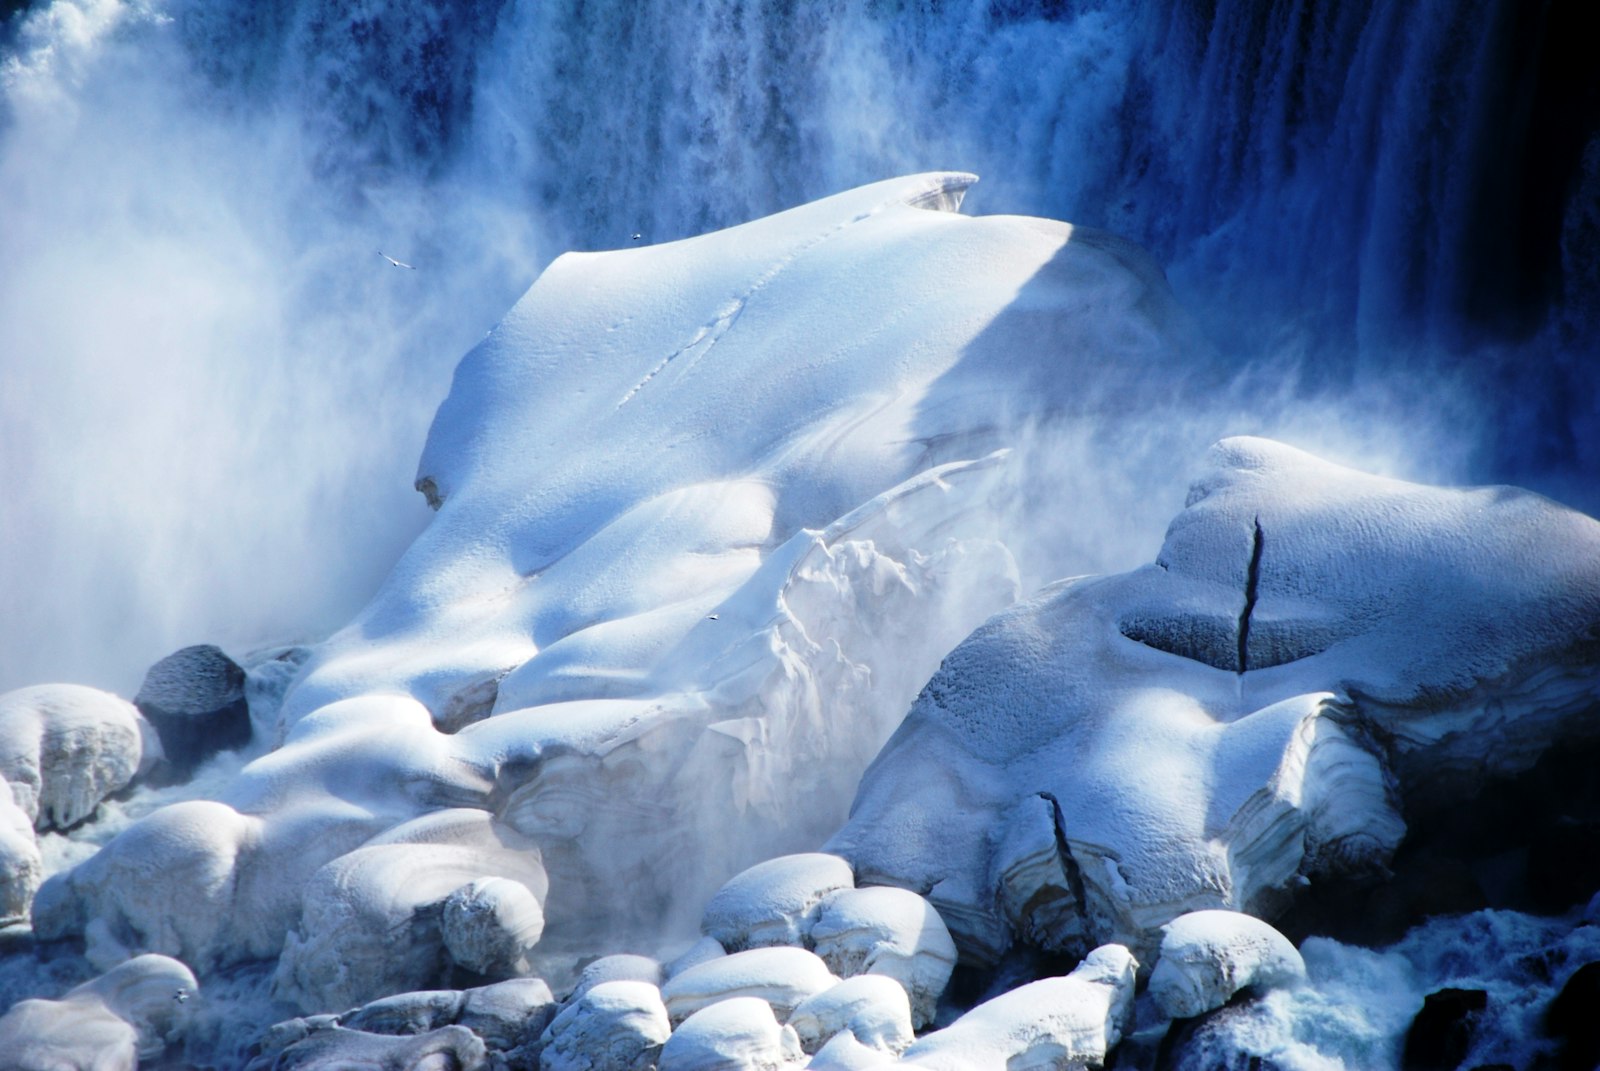 Nikon AF-S DX Nikkor 18-200mm F3.5-5.6G ED VR II sample photo. Landscape photography of snowy photography